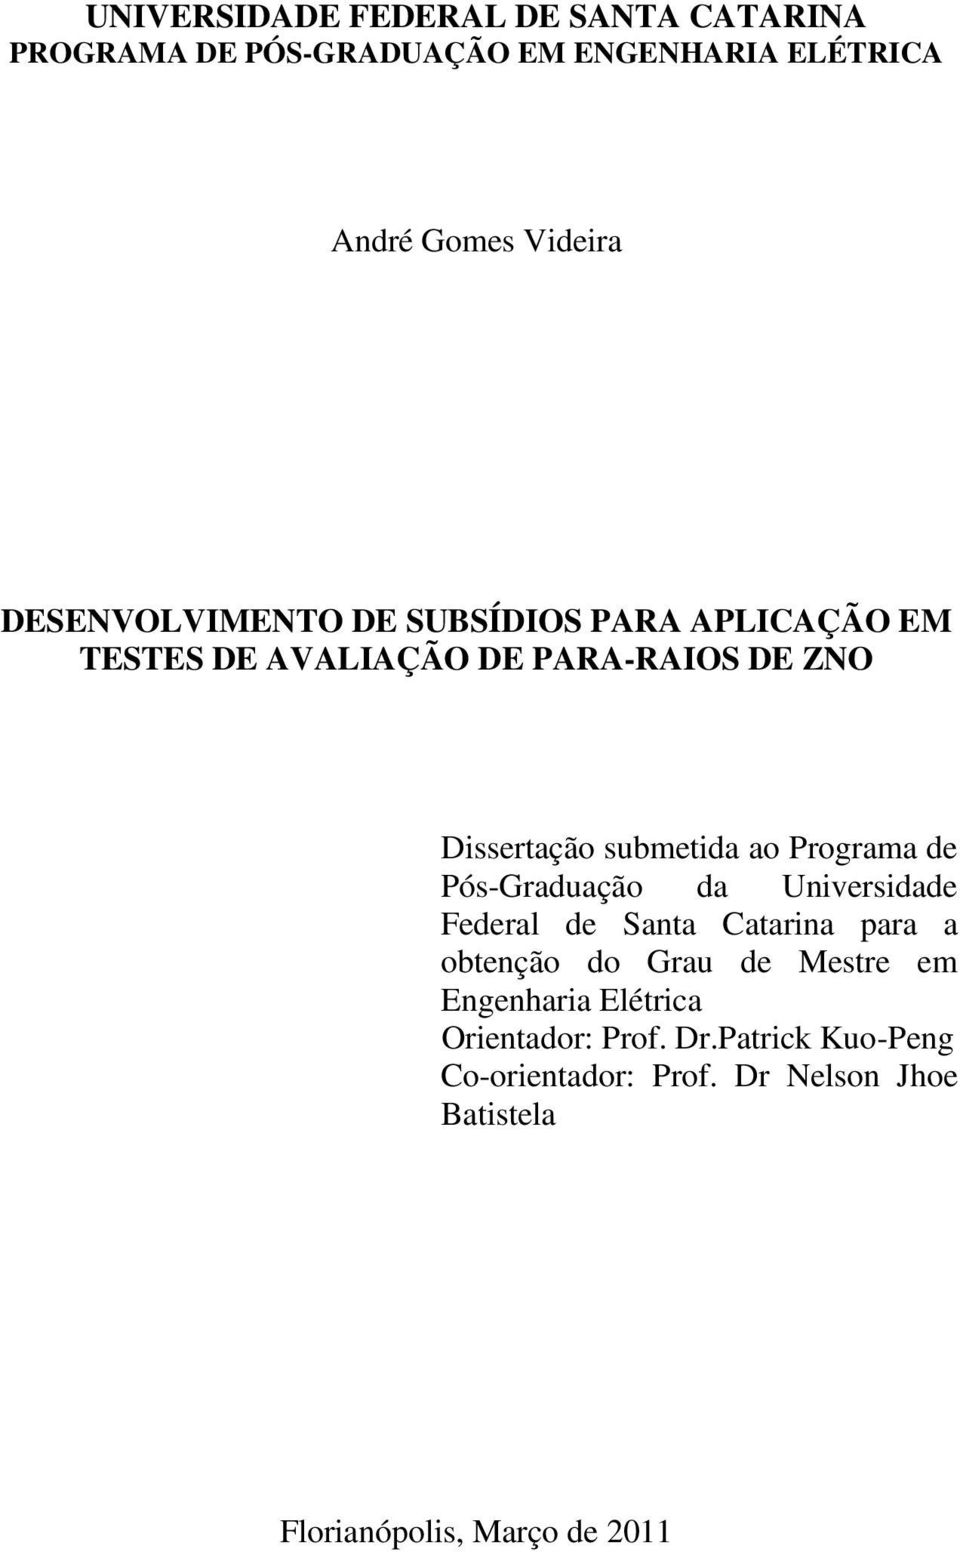 Programa de Pós-Graduação da Universidade Federal de Santa Catarina para a obtenção do Grau de Mestre em